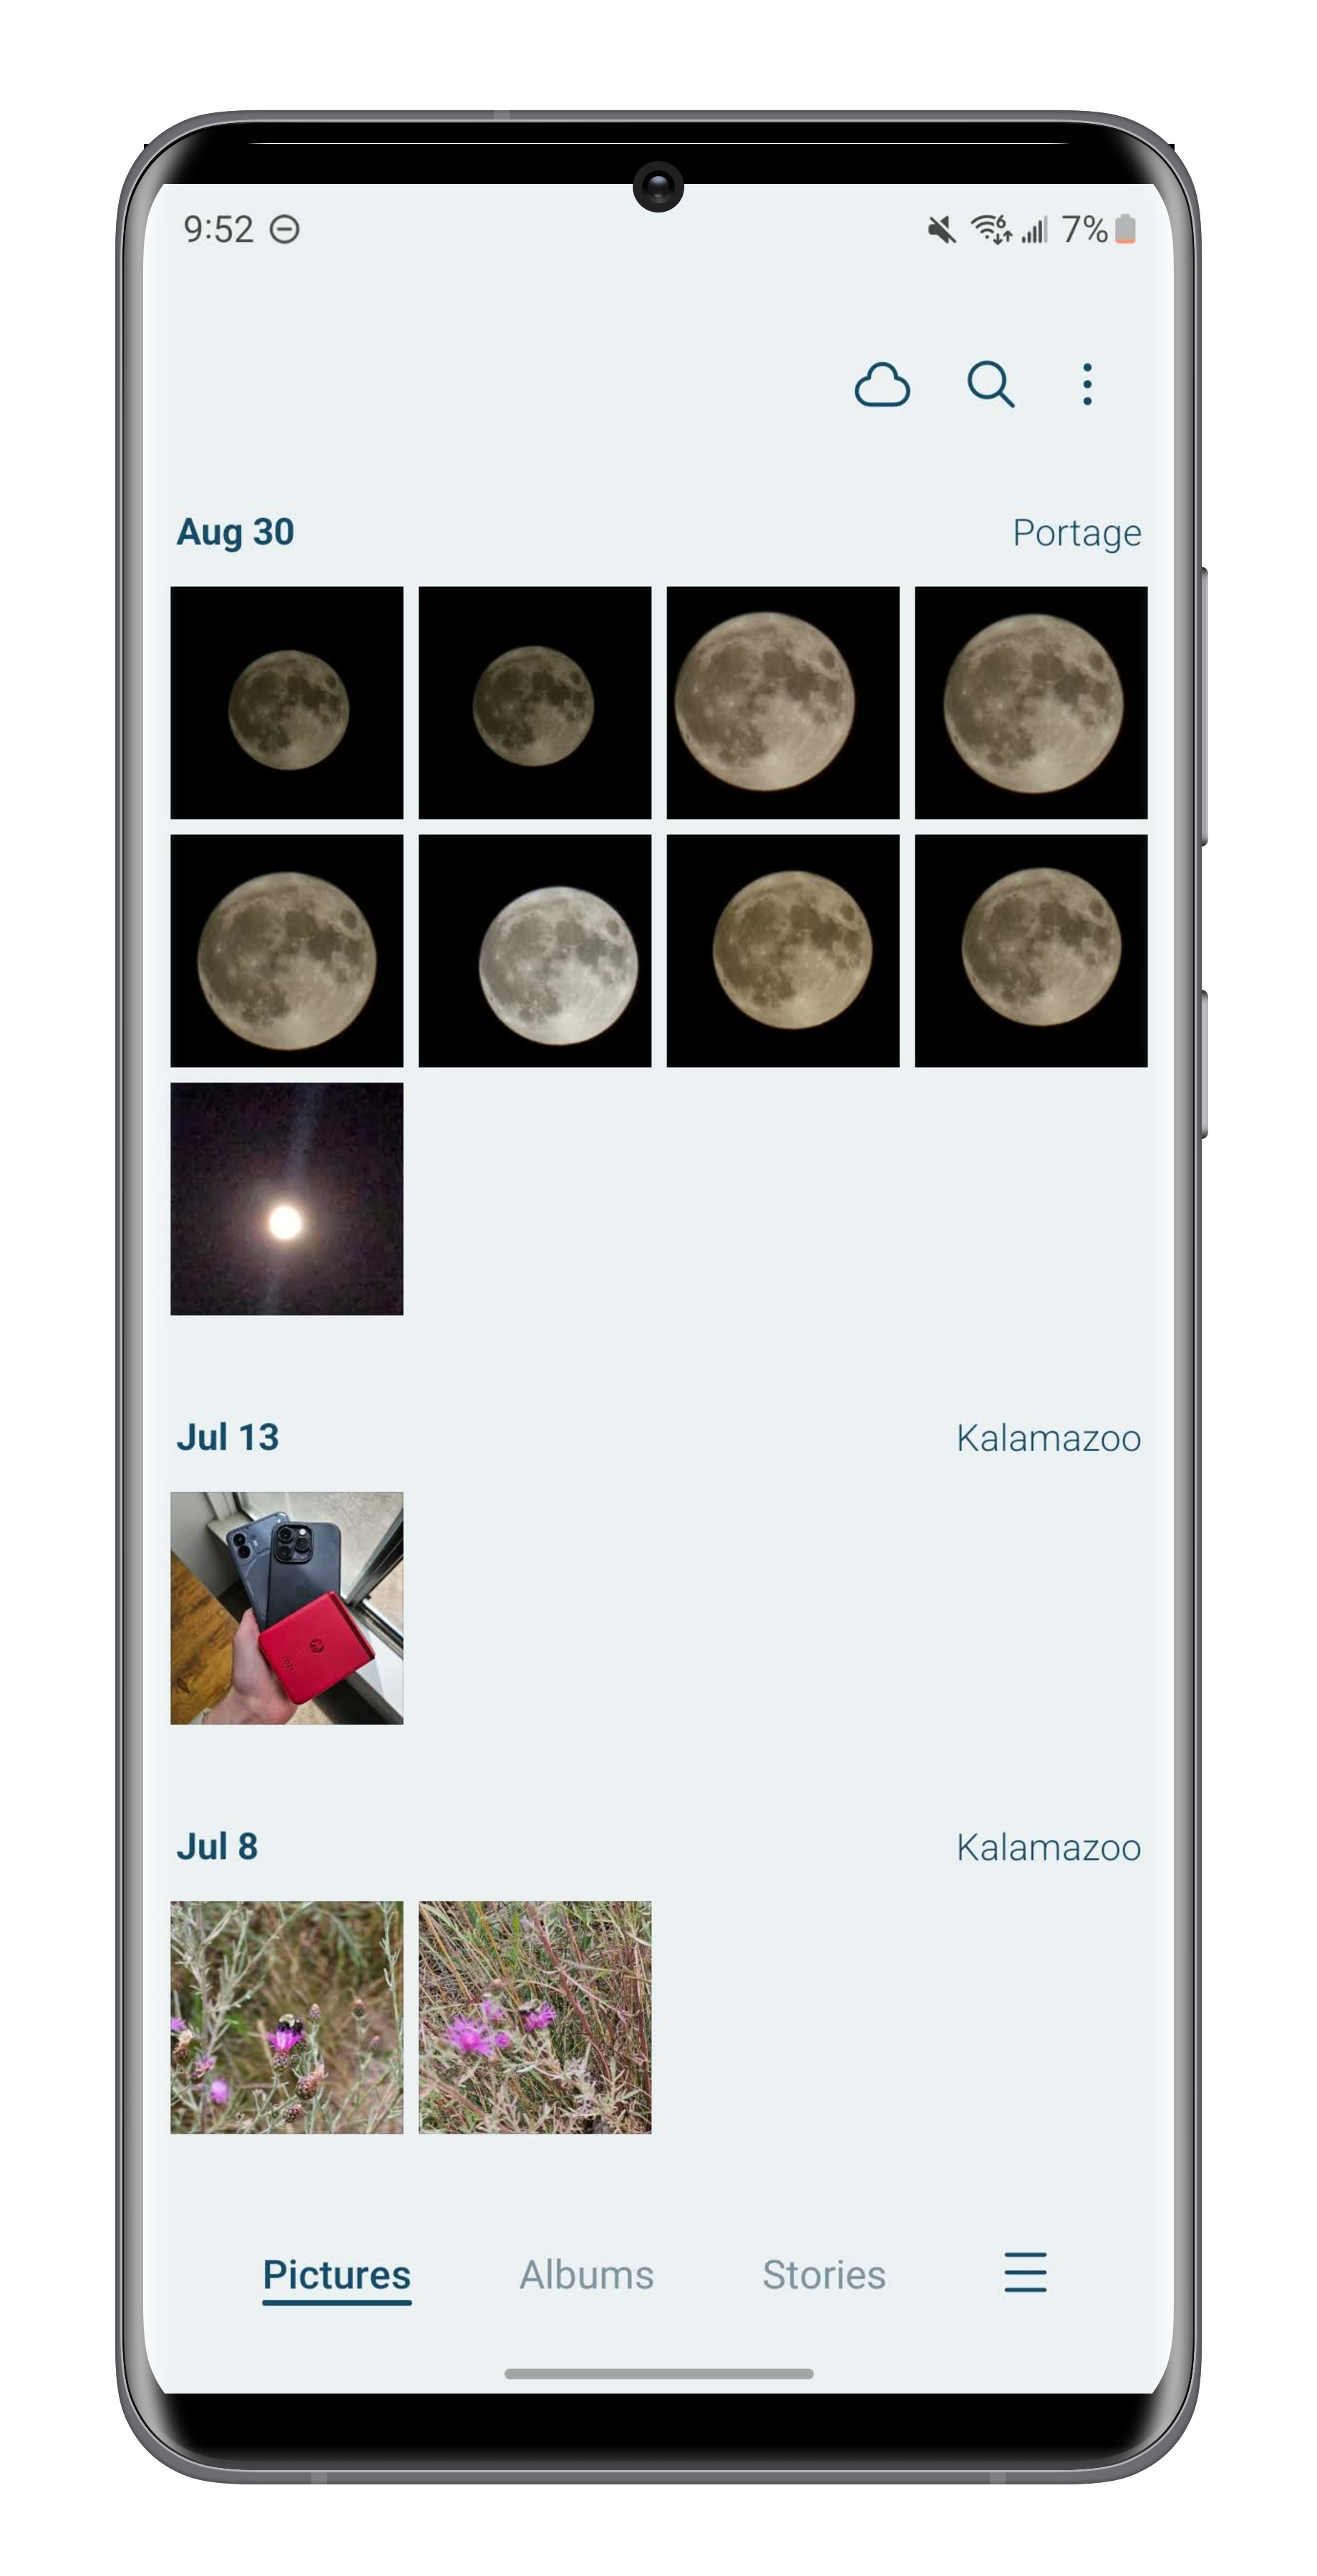 Configurando o recurso Pasta Segura para ocultar fotos em um telefone Samsung.